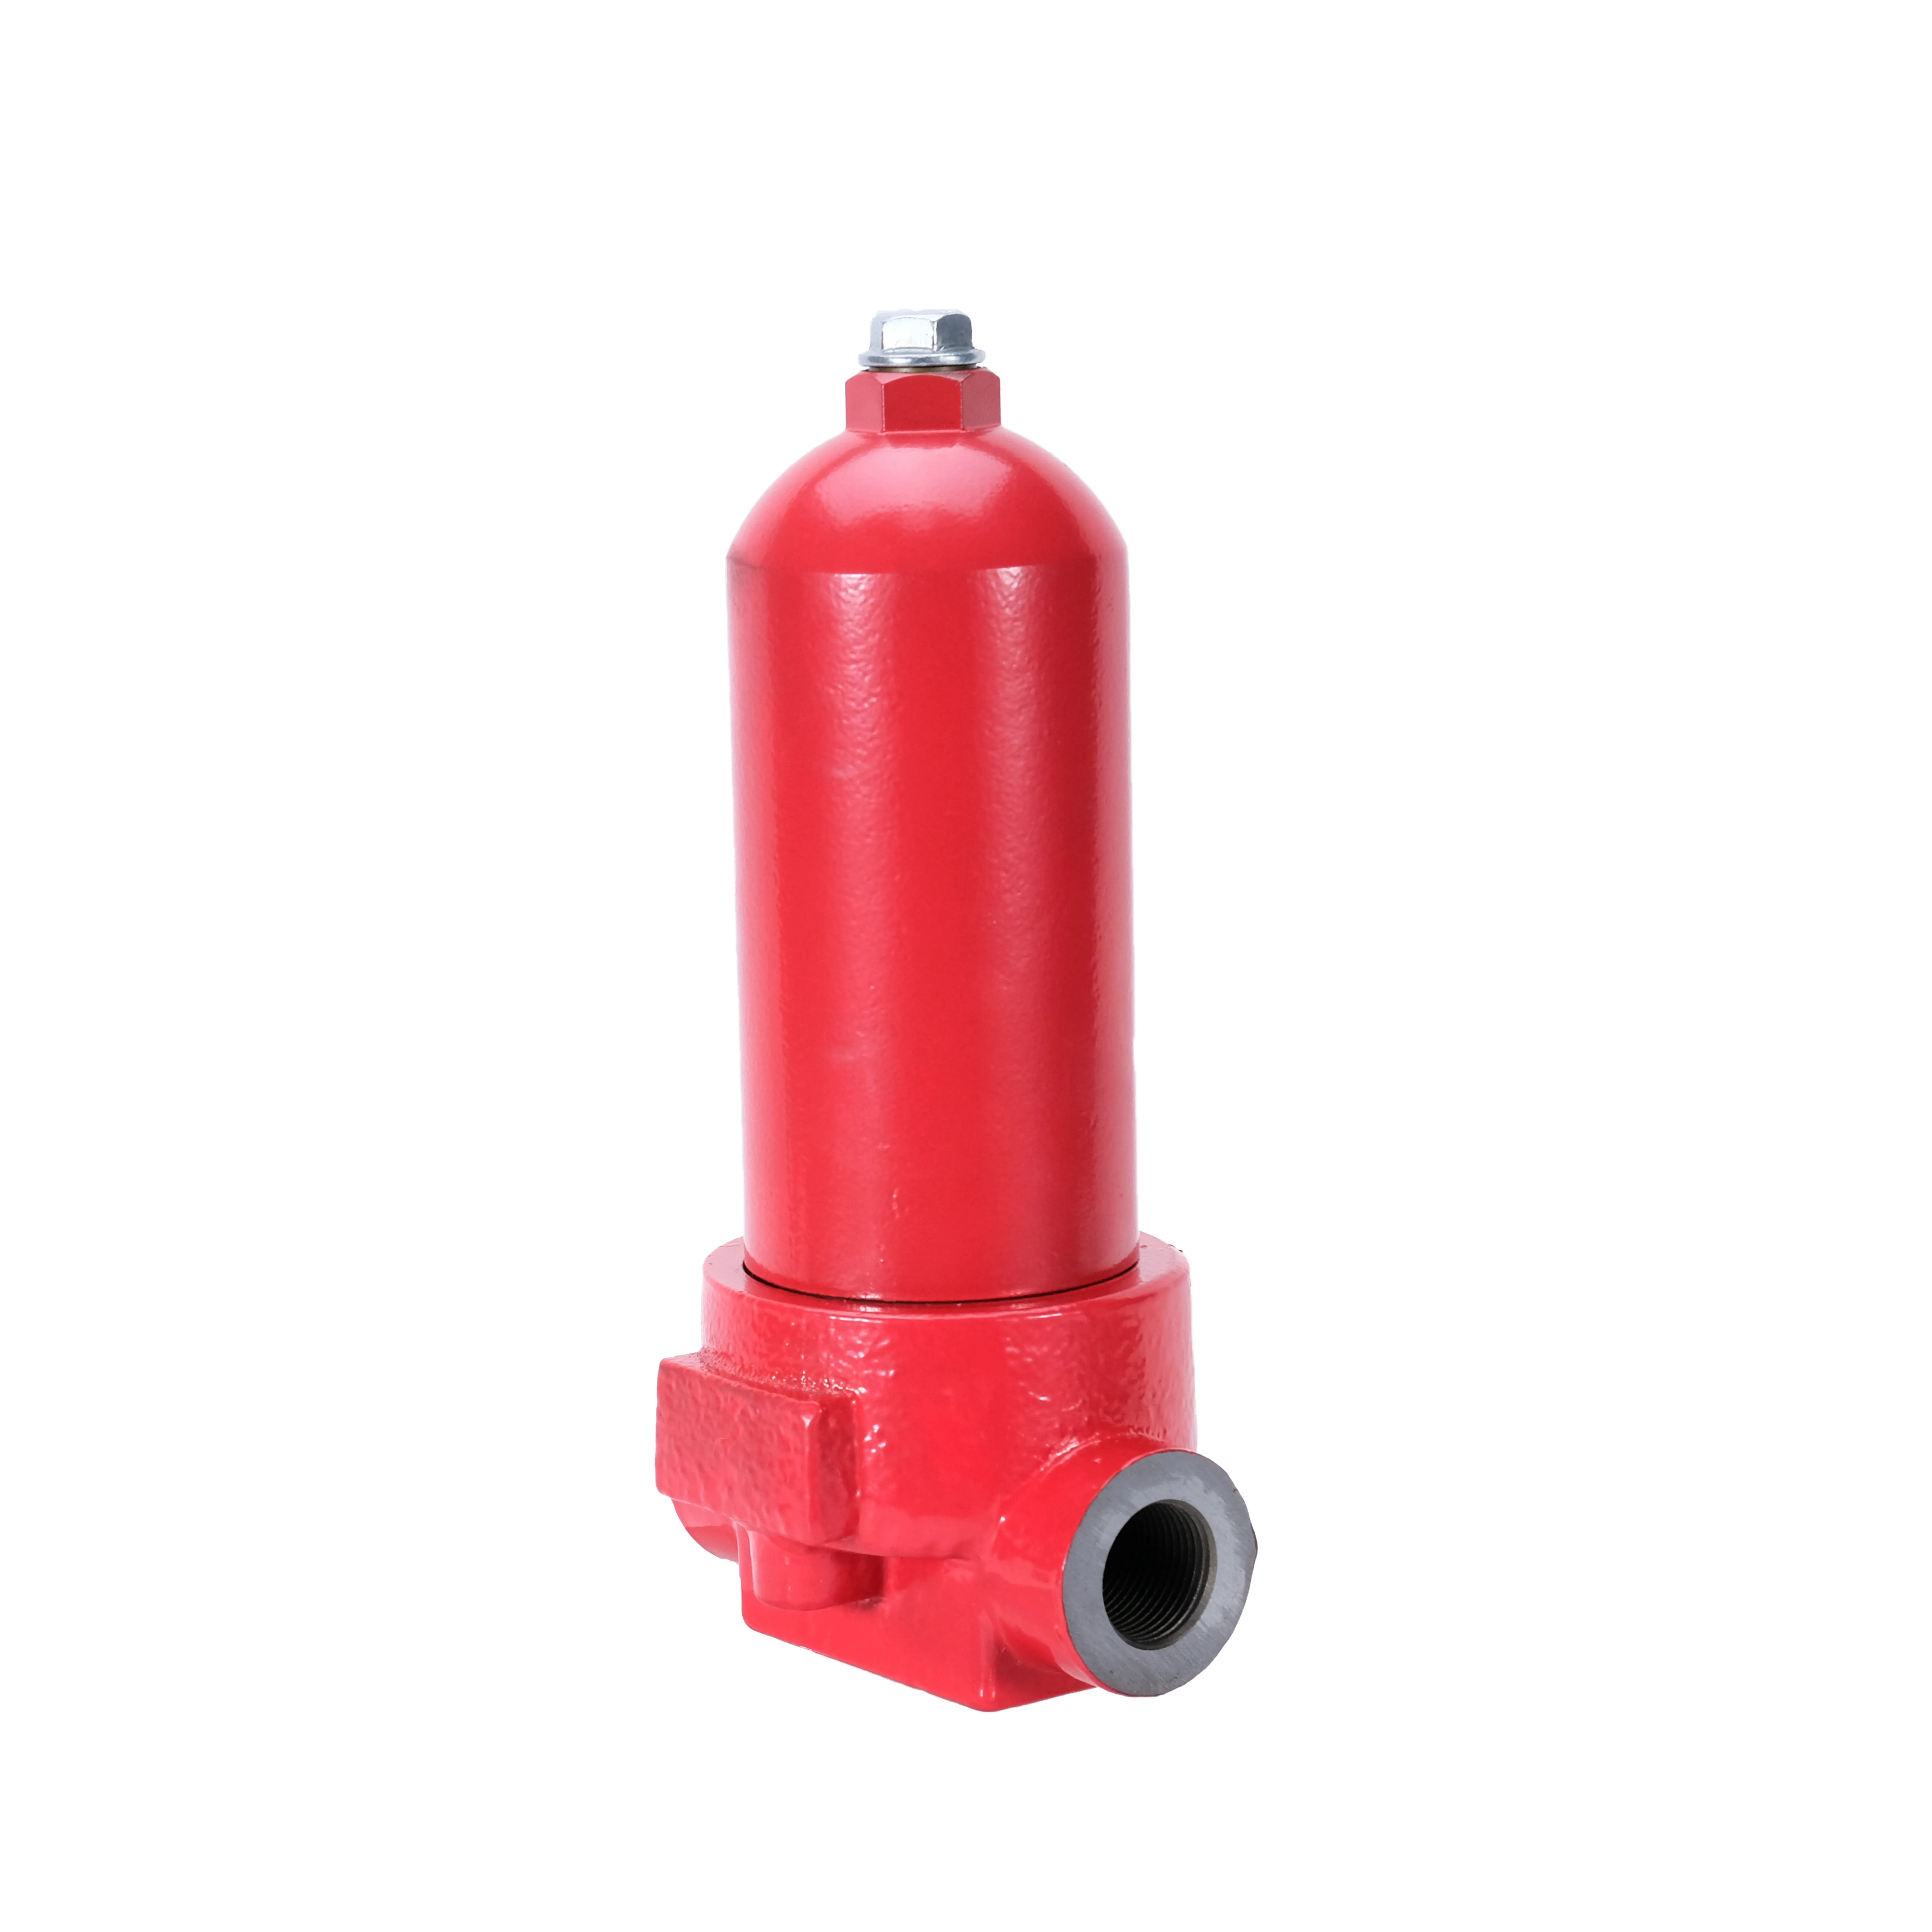 ZU-H63X3LP, Hydraulikleitungs-Öl rücklauf filter mit hoher Präzisions filter kapazität für Hydraulik schalter